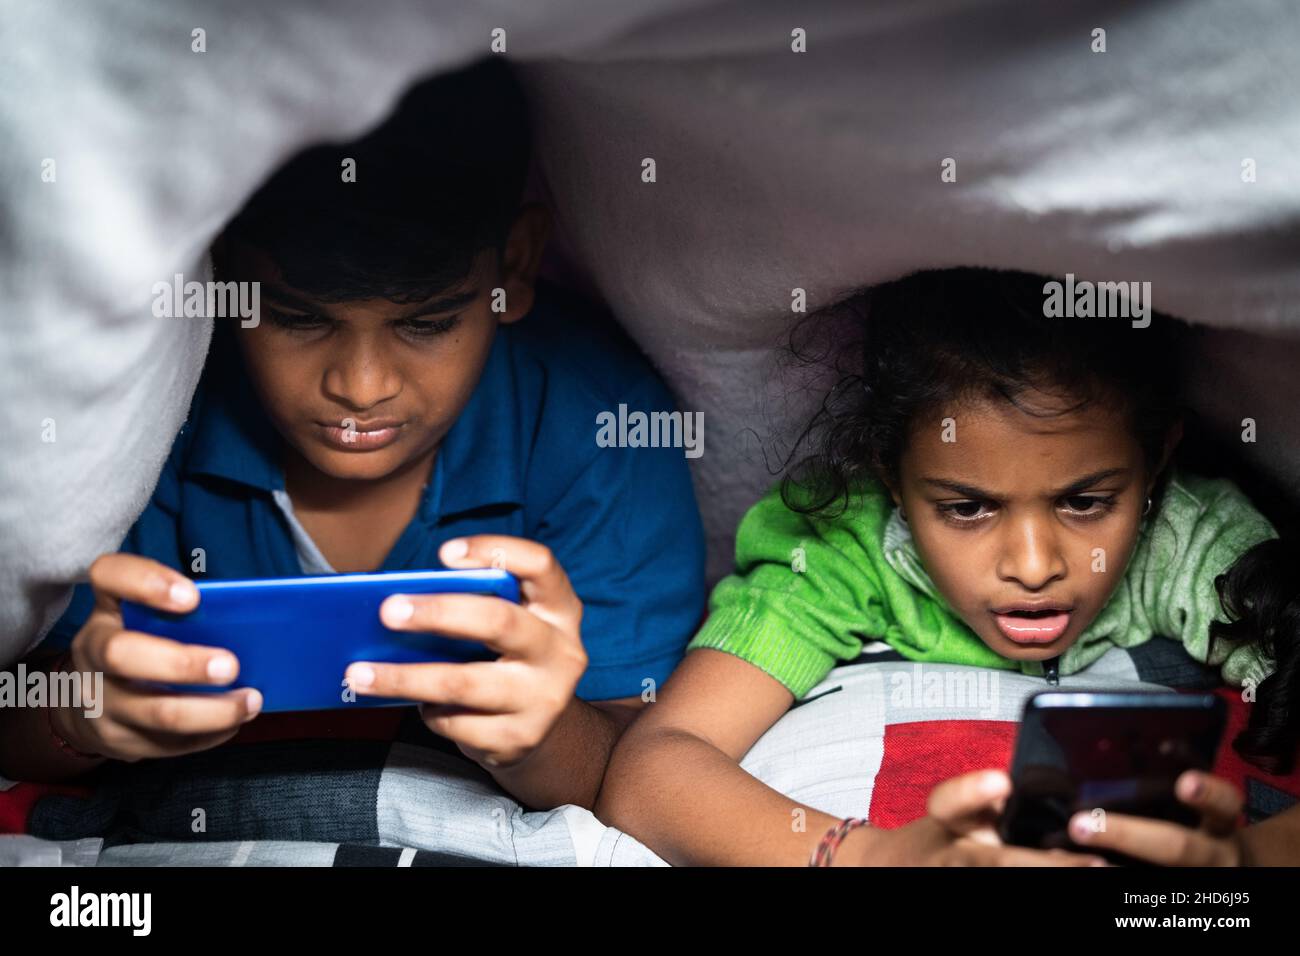 Bambini impegnati a giocare video gioco sul telefono cellulare di notte sotto il lenzuolo - concetto smartphone e tecnologia dipendenza, stile di vita infantile insalubre Foto Stock